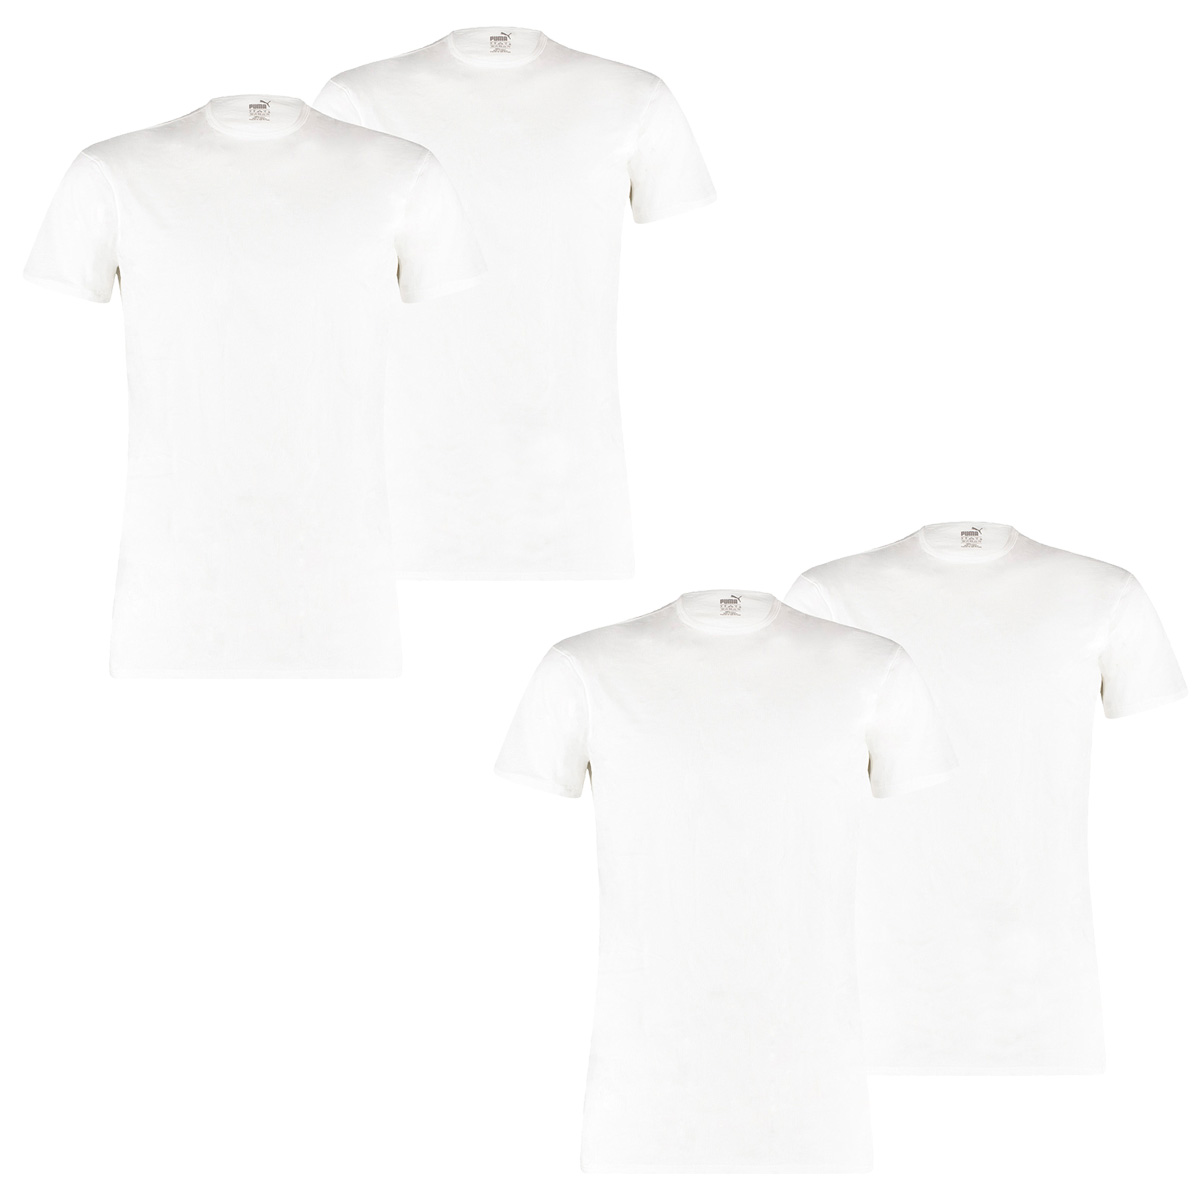 Puma 6 er Pack Basic Crew T-Shirt Men Herren Unterhemd Rundhals, Bekleidungsgröße:S, Farbe:300 - White